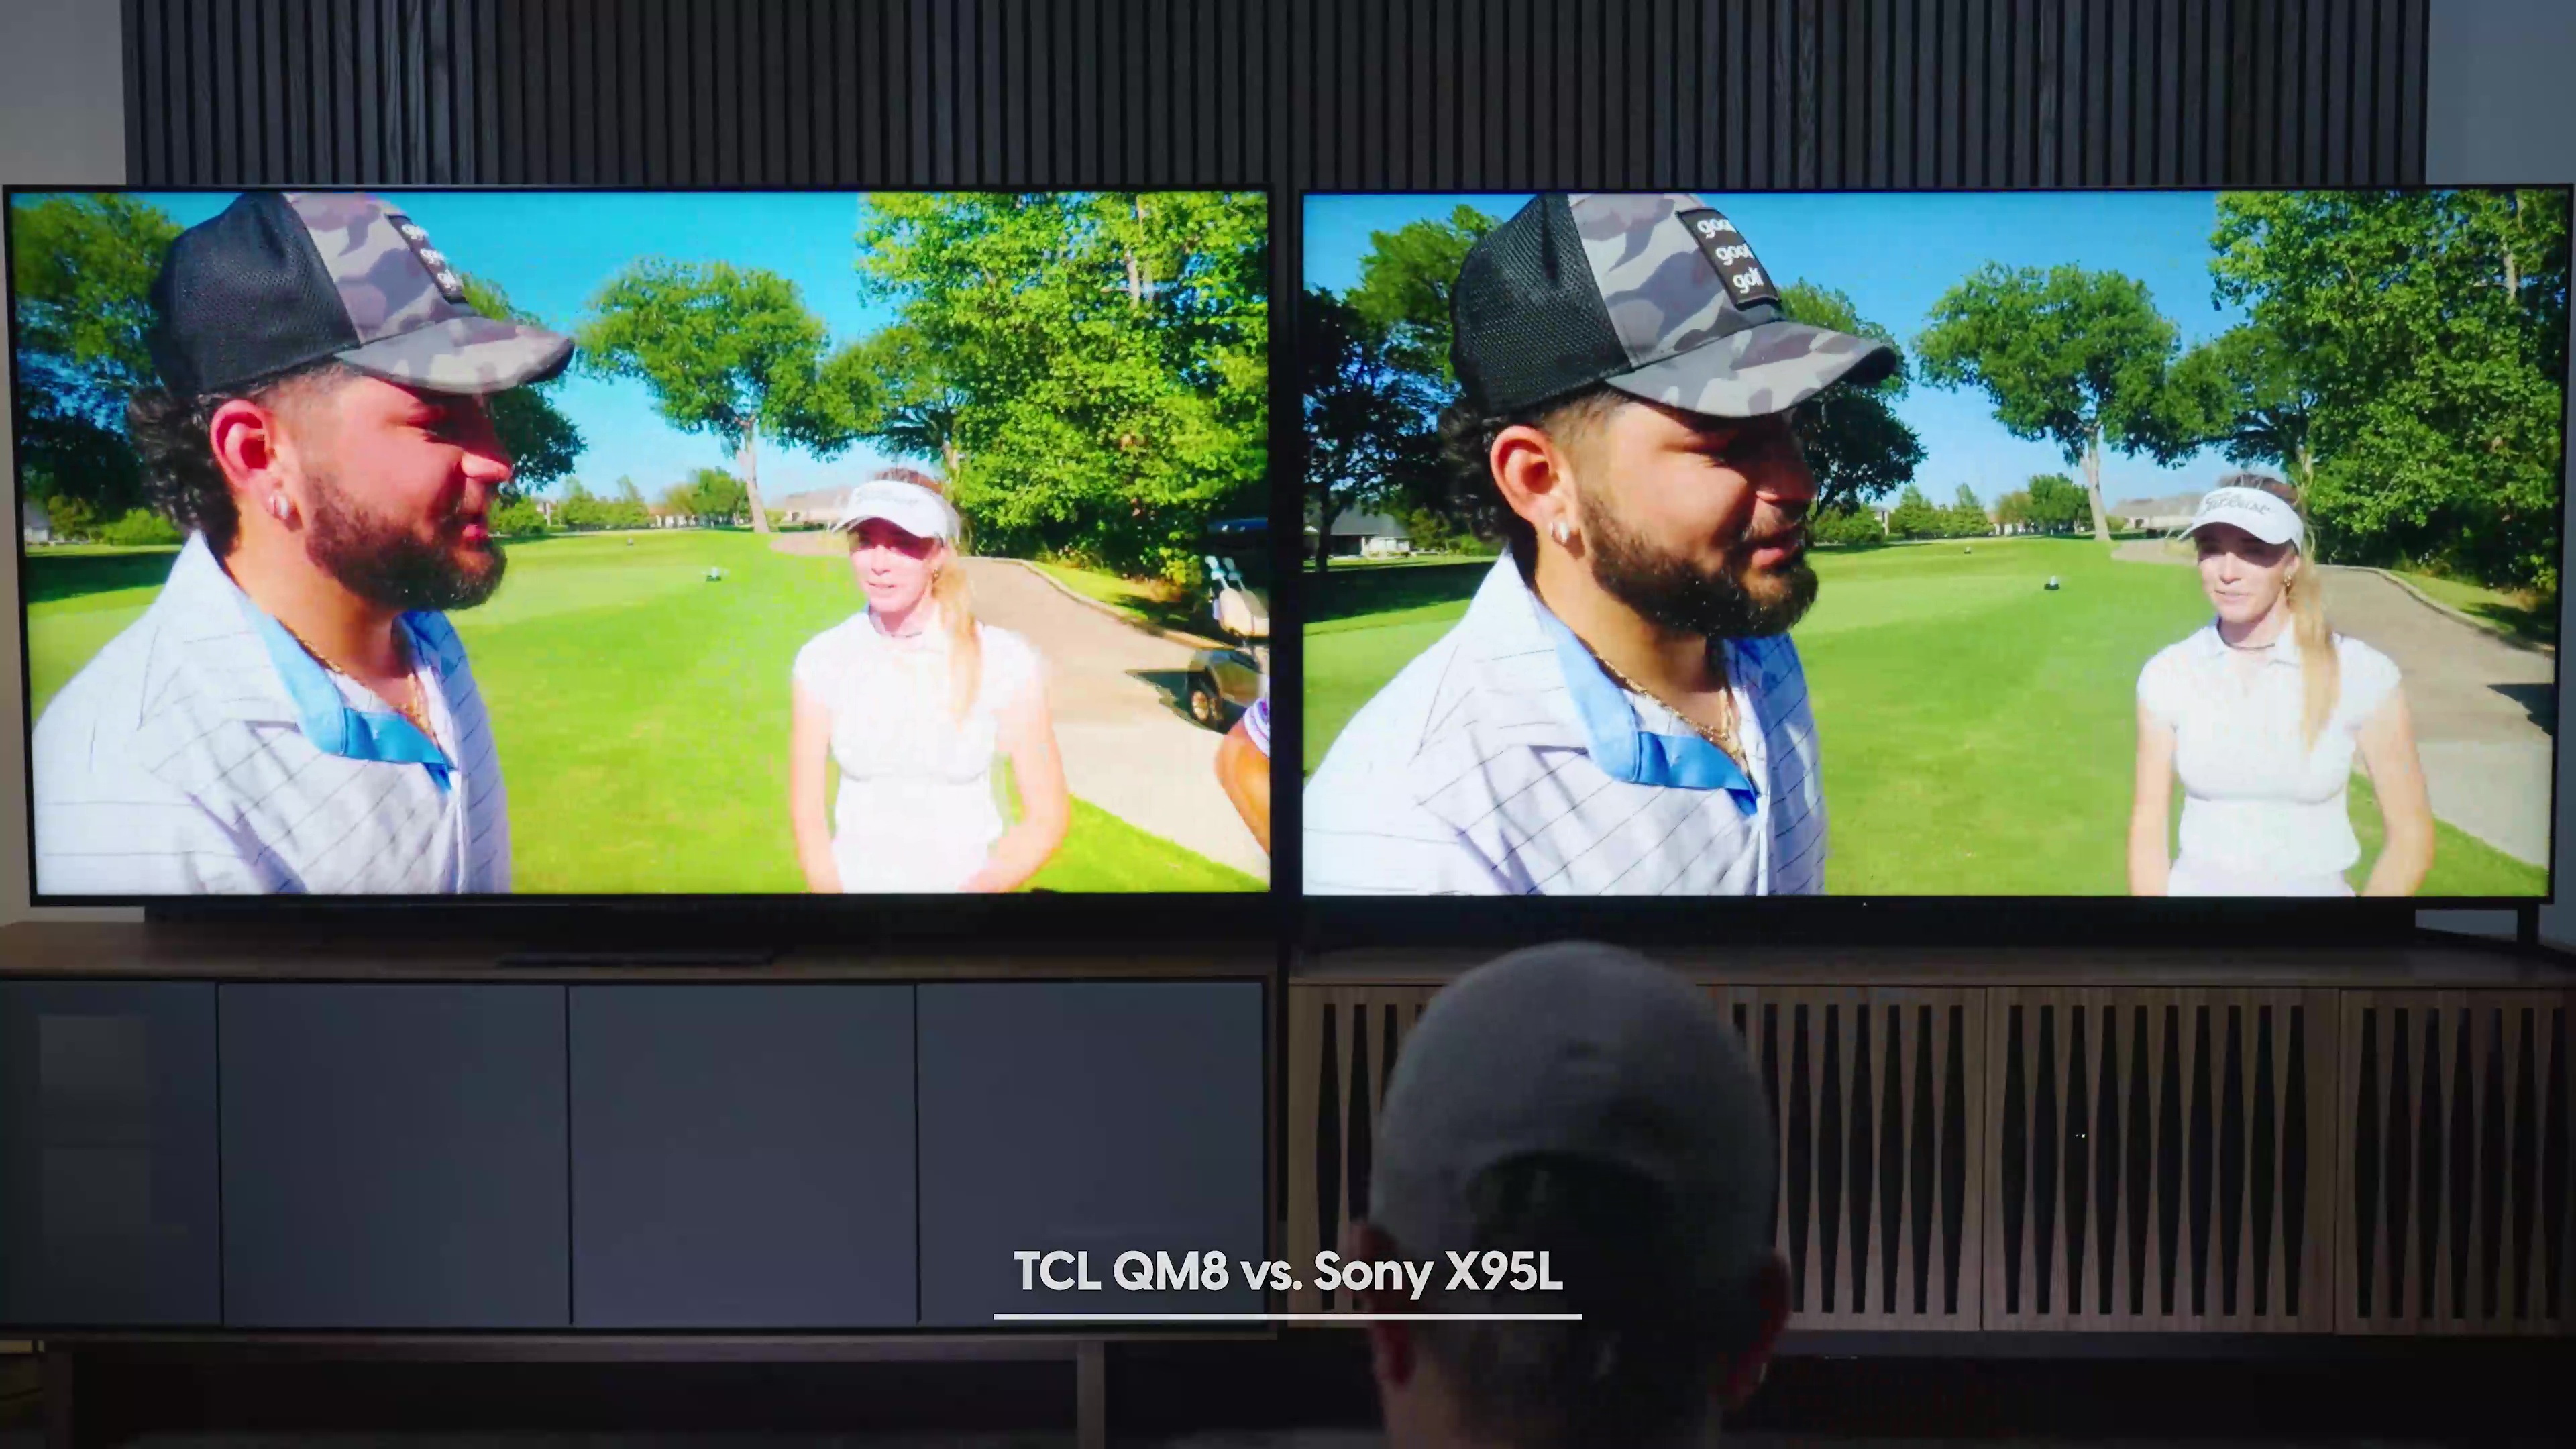 Comparação lado a lado de um homem sendo entrevistado em um campo de golfe com uma mulher ao fundo em um Sony Bravia X95L vs TCL QM8.